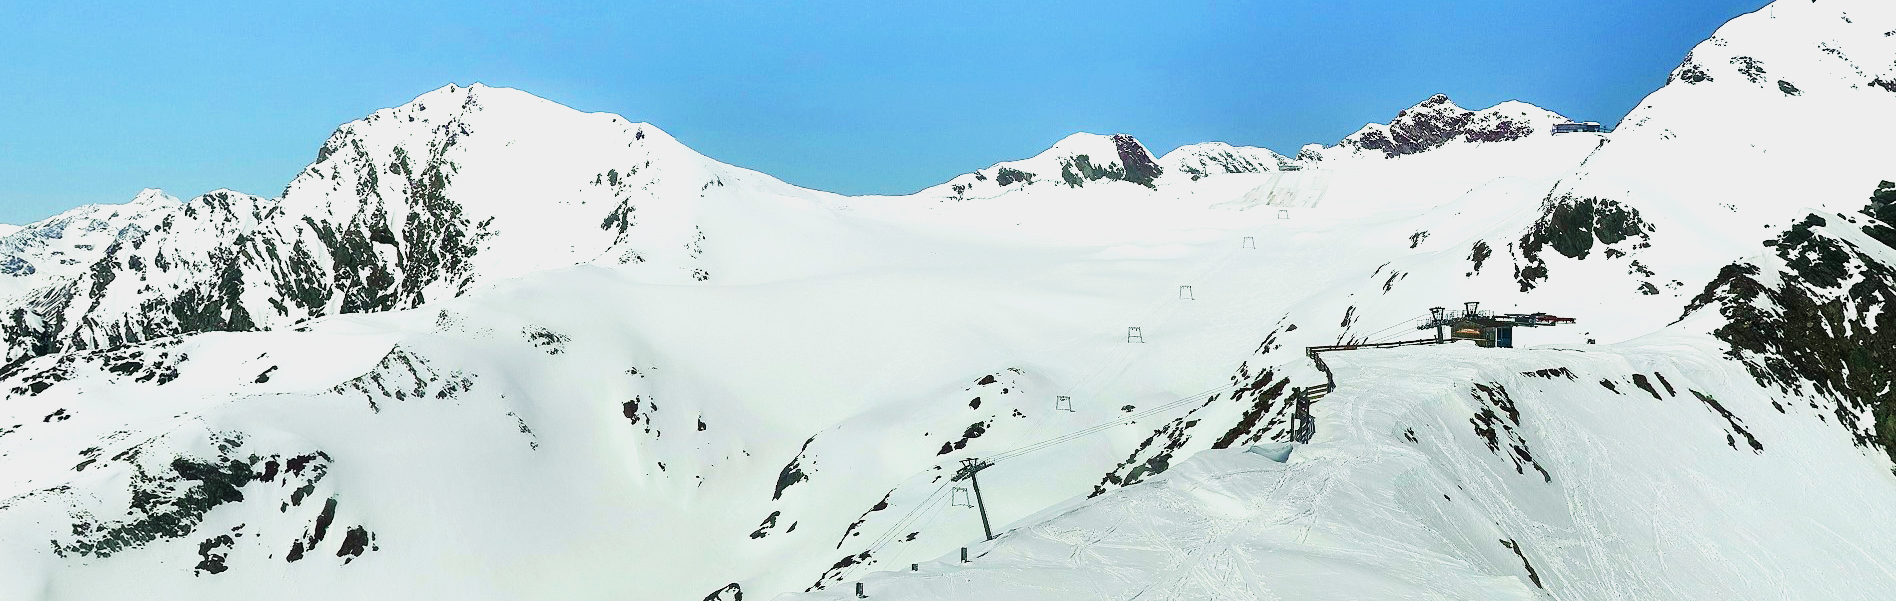 Stubaier Gletscher, Snowpark, Schneebedingungen